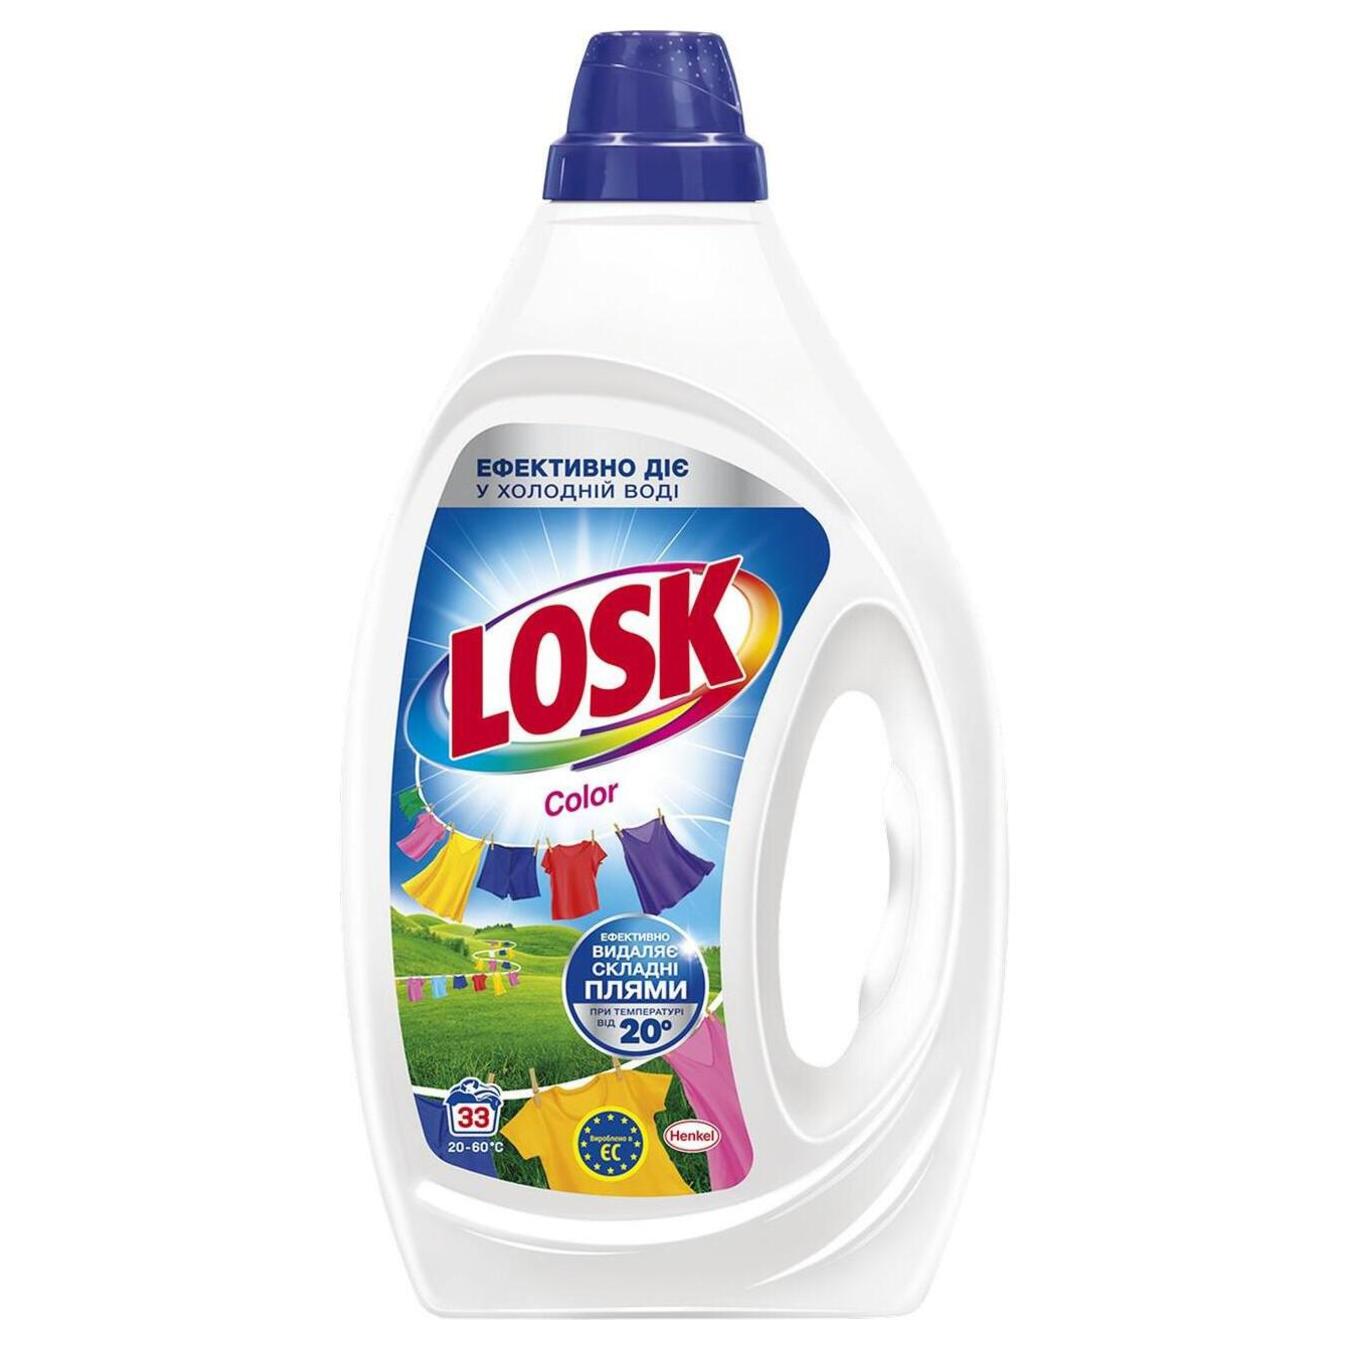 Washing gel Losk Color 1.485 l